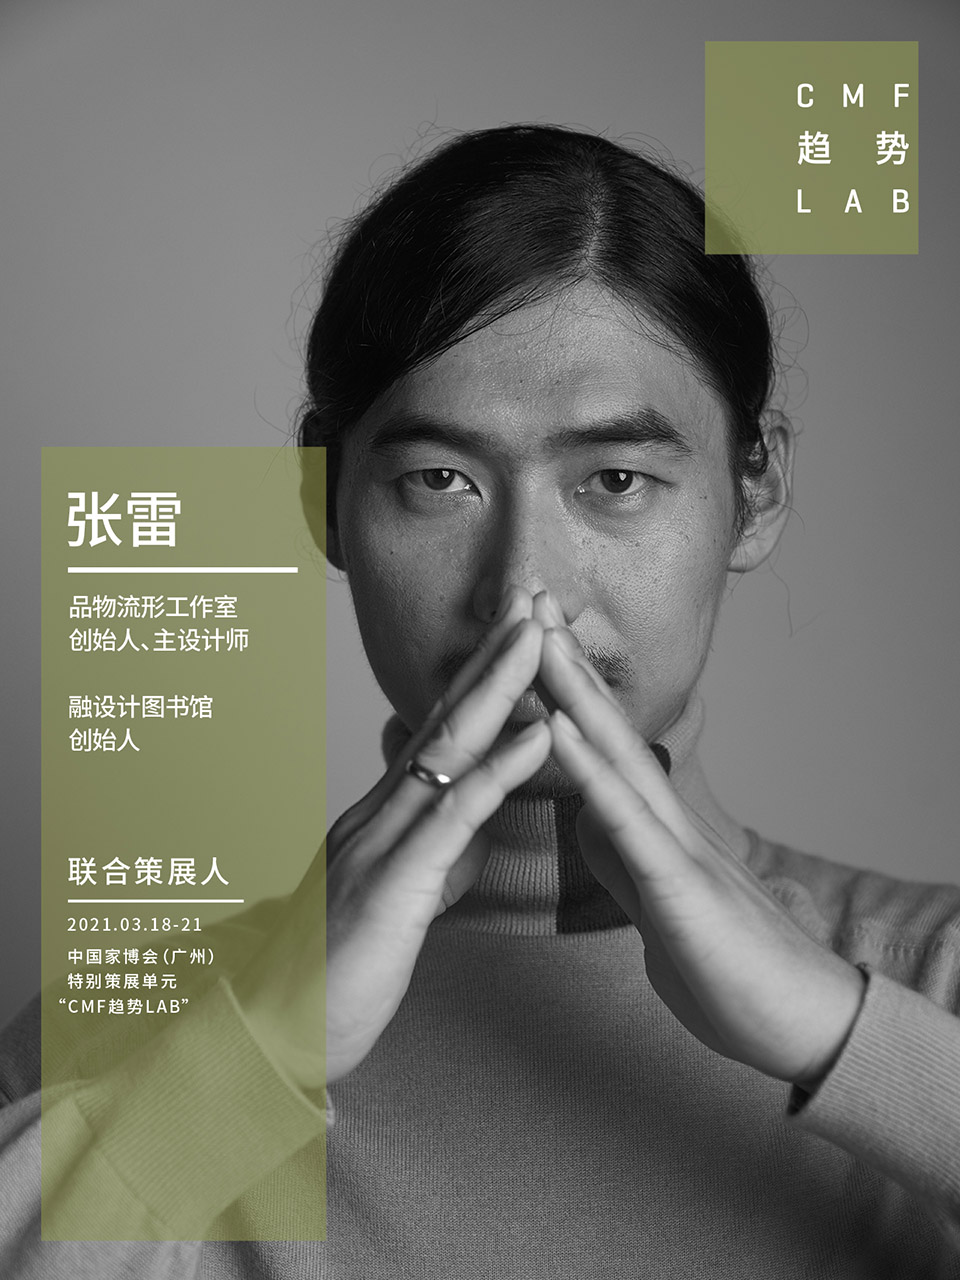 中国家博会“CMF趋势LAB” 四大主题实验室全新发布/“虚拟重构实验室”、“融手艺材料实验室”、“精致懒实验室”、“无废实验室”
-118